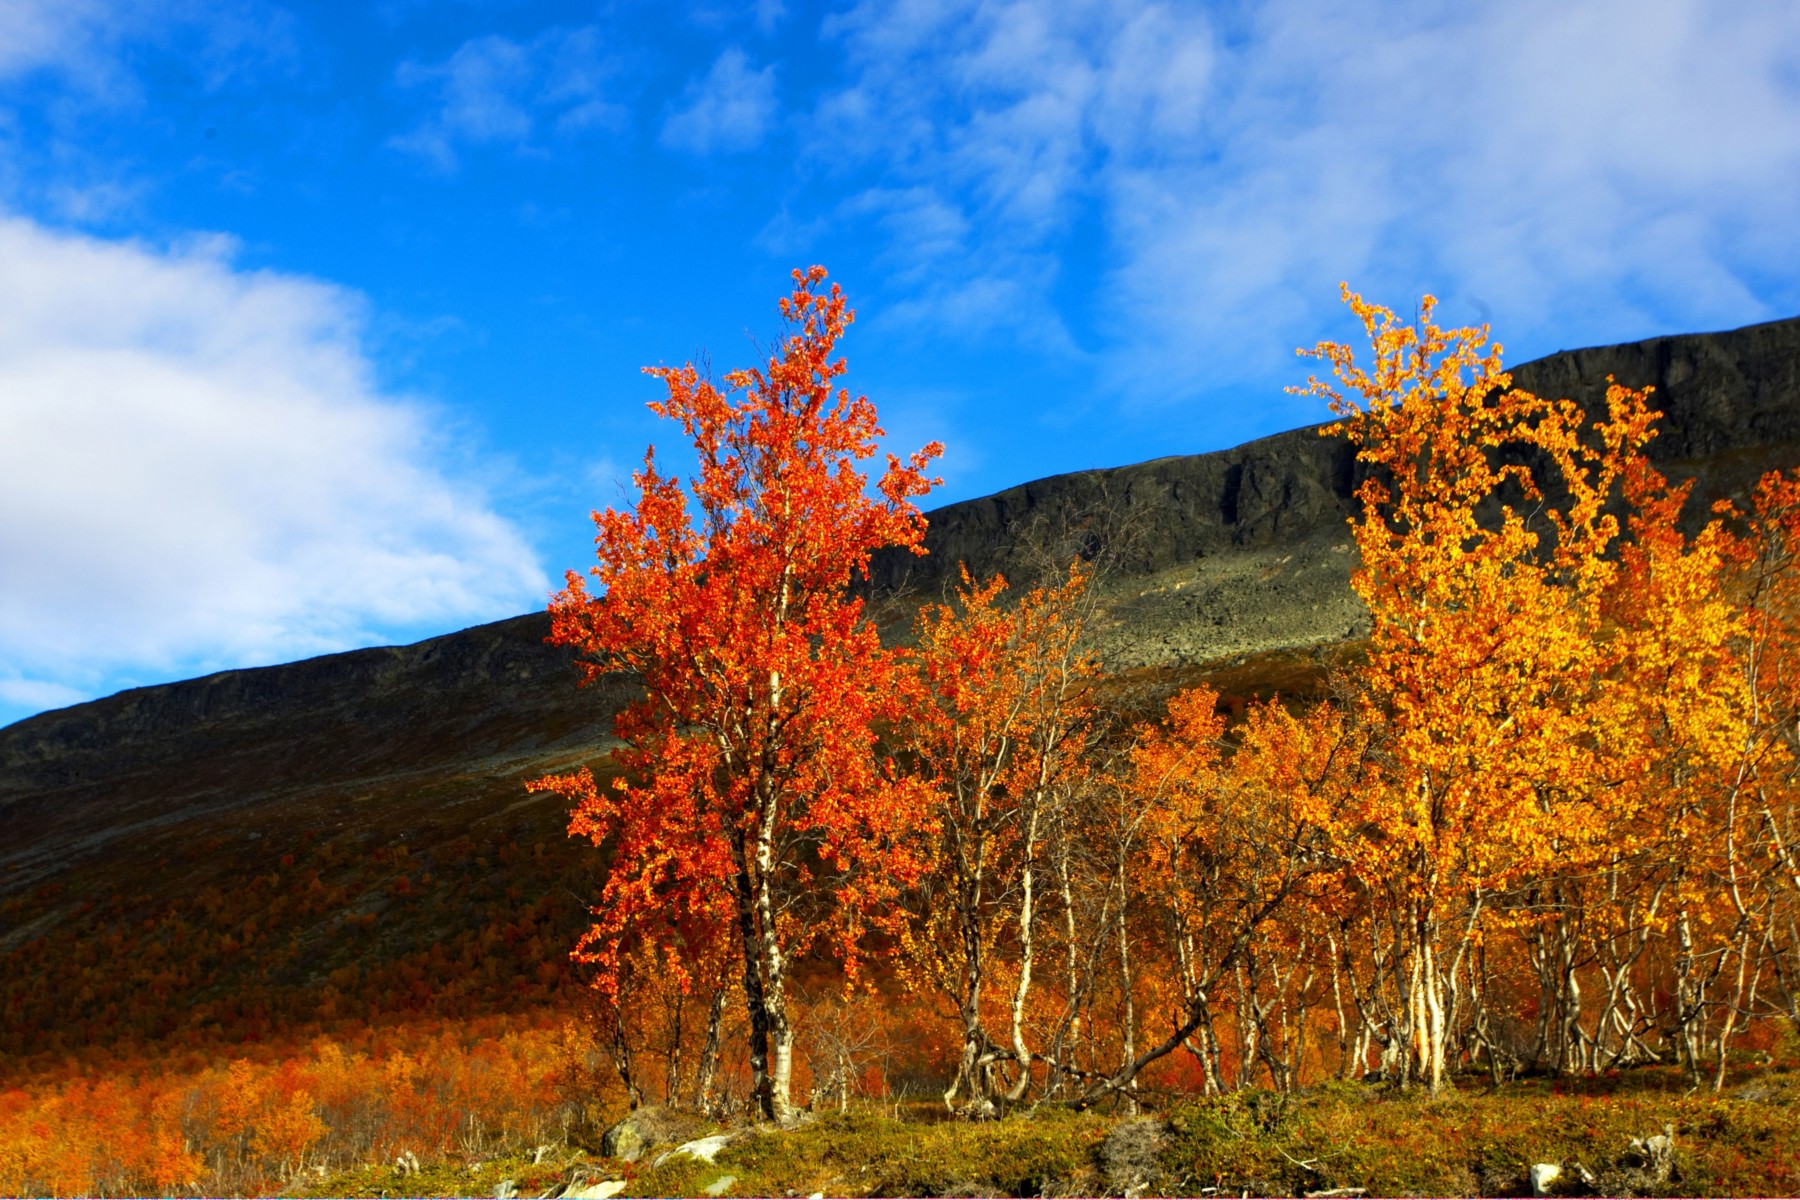 En primer plano, varios árboles con hojas otoñales rojas y naranjas sobre el fondo de una colina verde y un cielo azul.